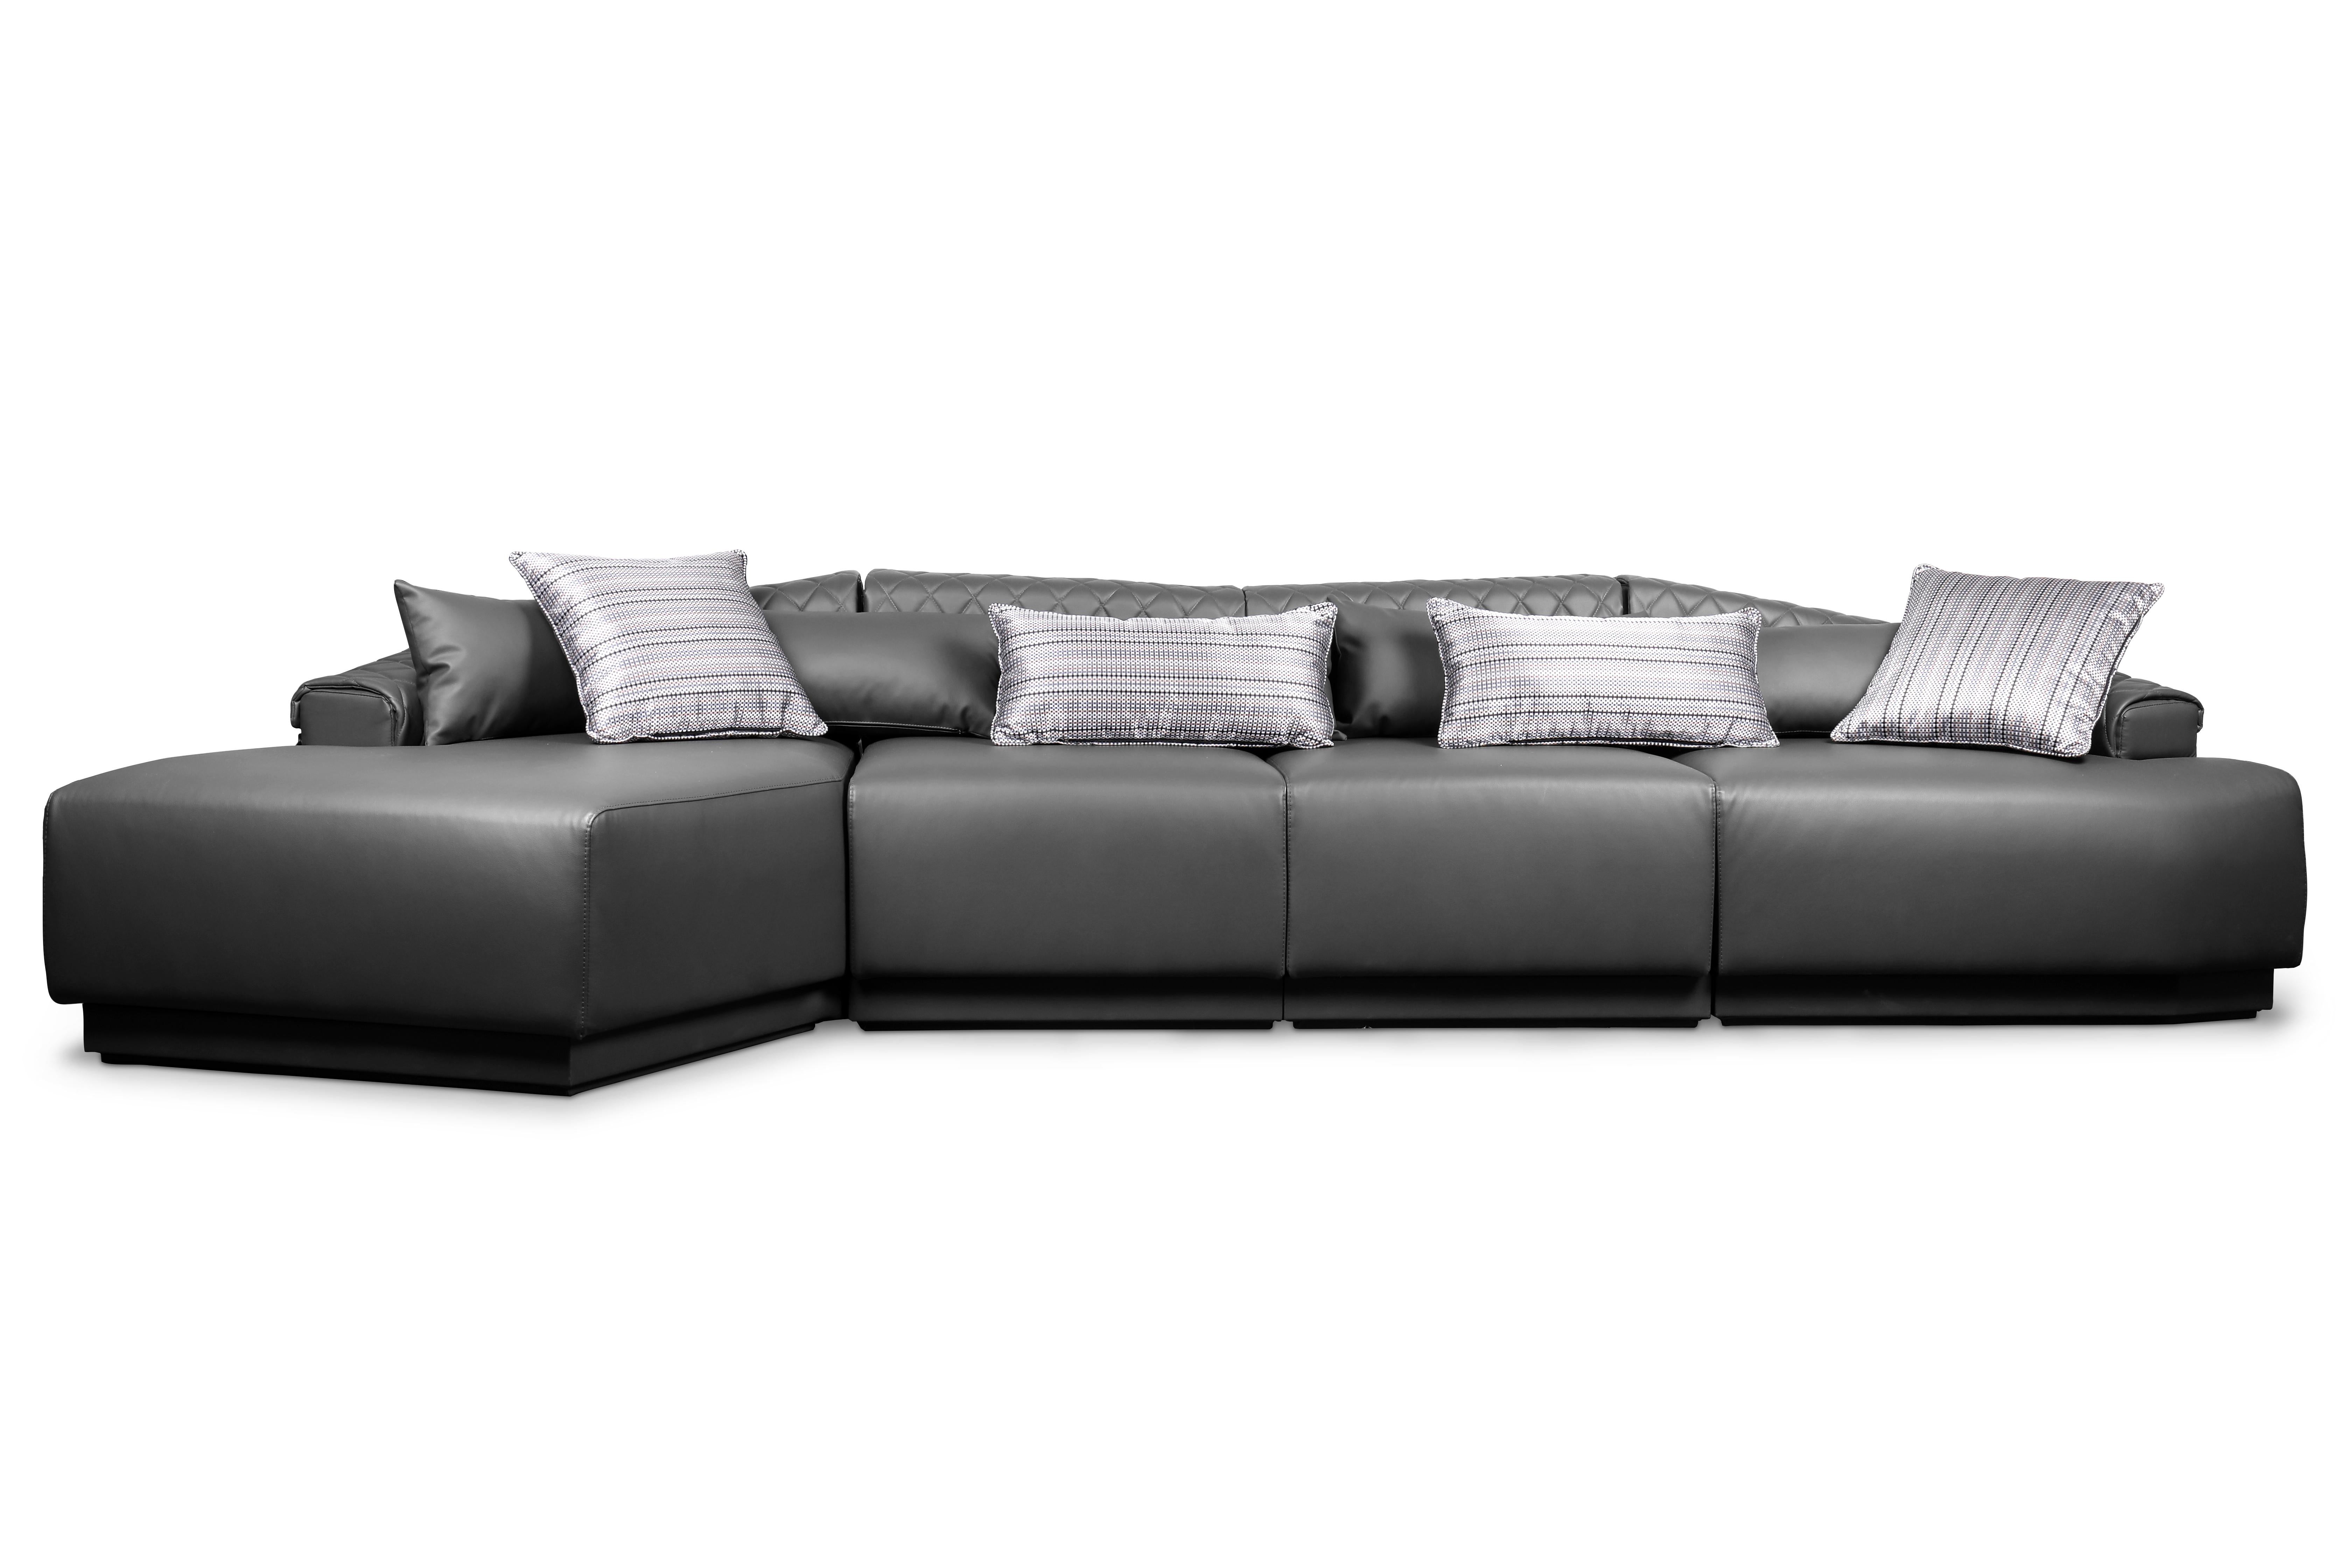 Inspiriert durch seine besondere Form ist Anguis ein modulares und anpassungsfähiges Sofa, das eine Vielzahl von Profilen aufnehmen kann, ohne seine komfortable und luxuriöse Seite zu verlieren. Die Haut, mit der er überzogen ist, spiegelt die